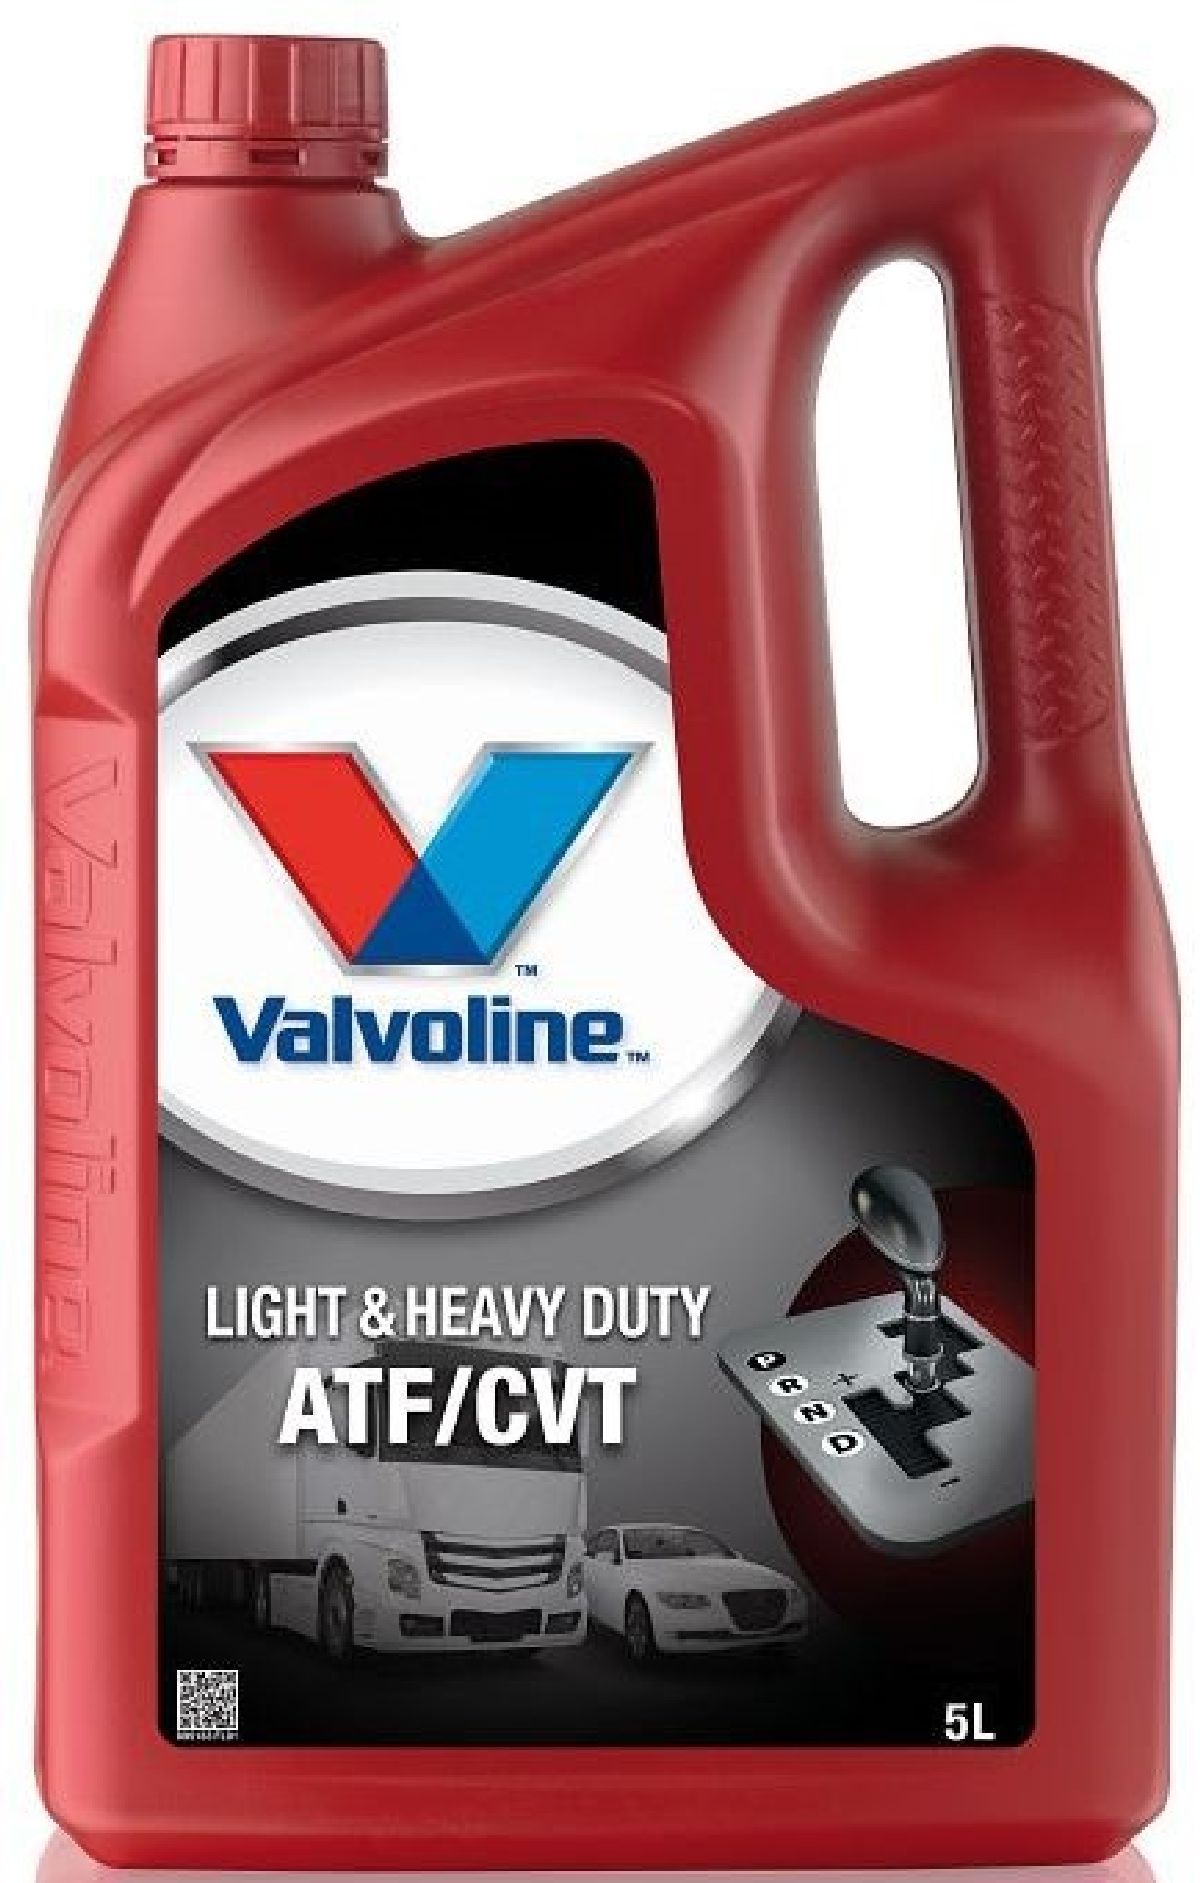 Valvoline LD&HD ATF/CVT